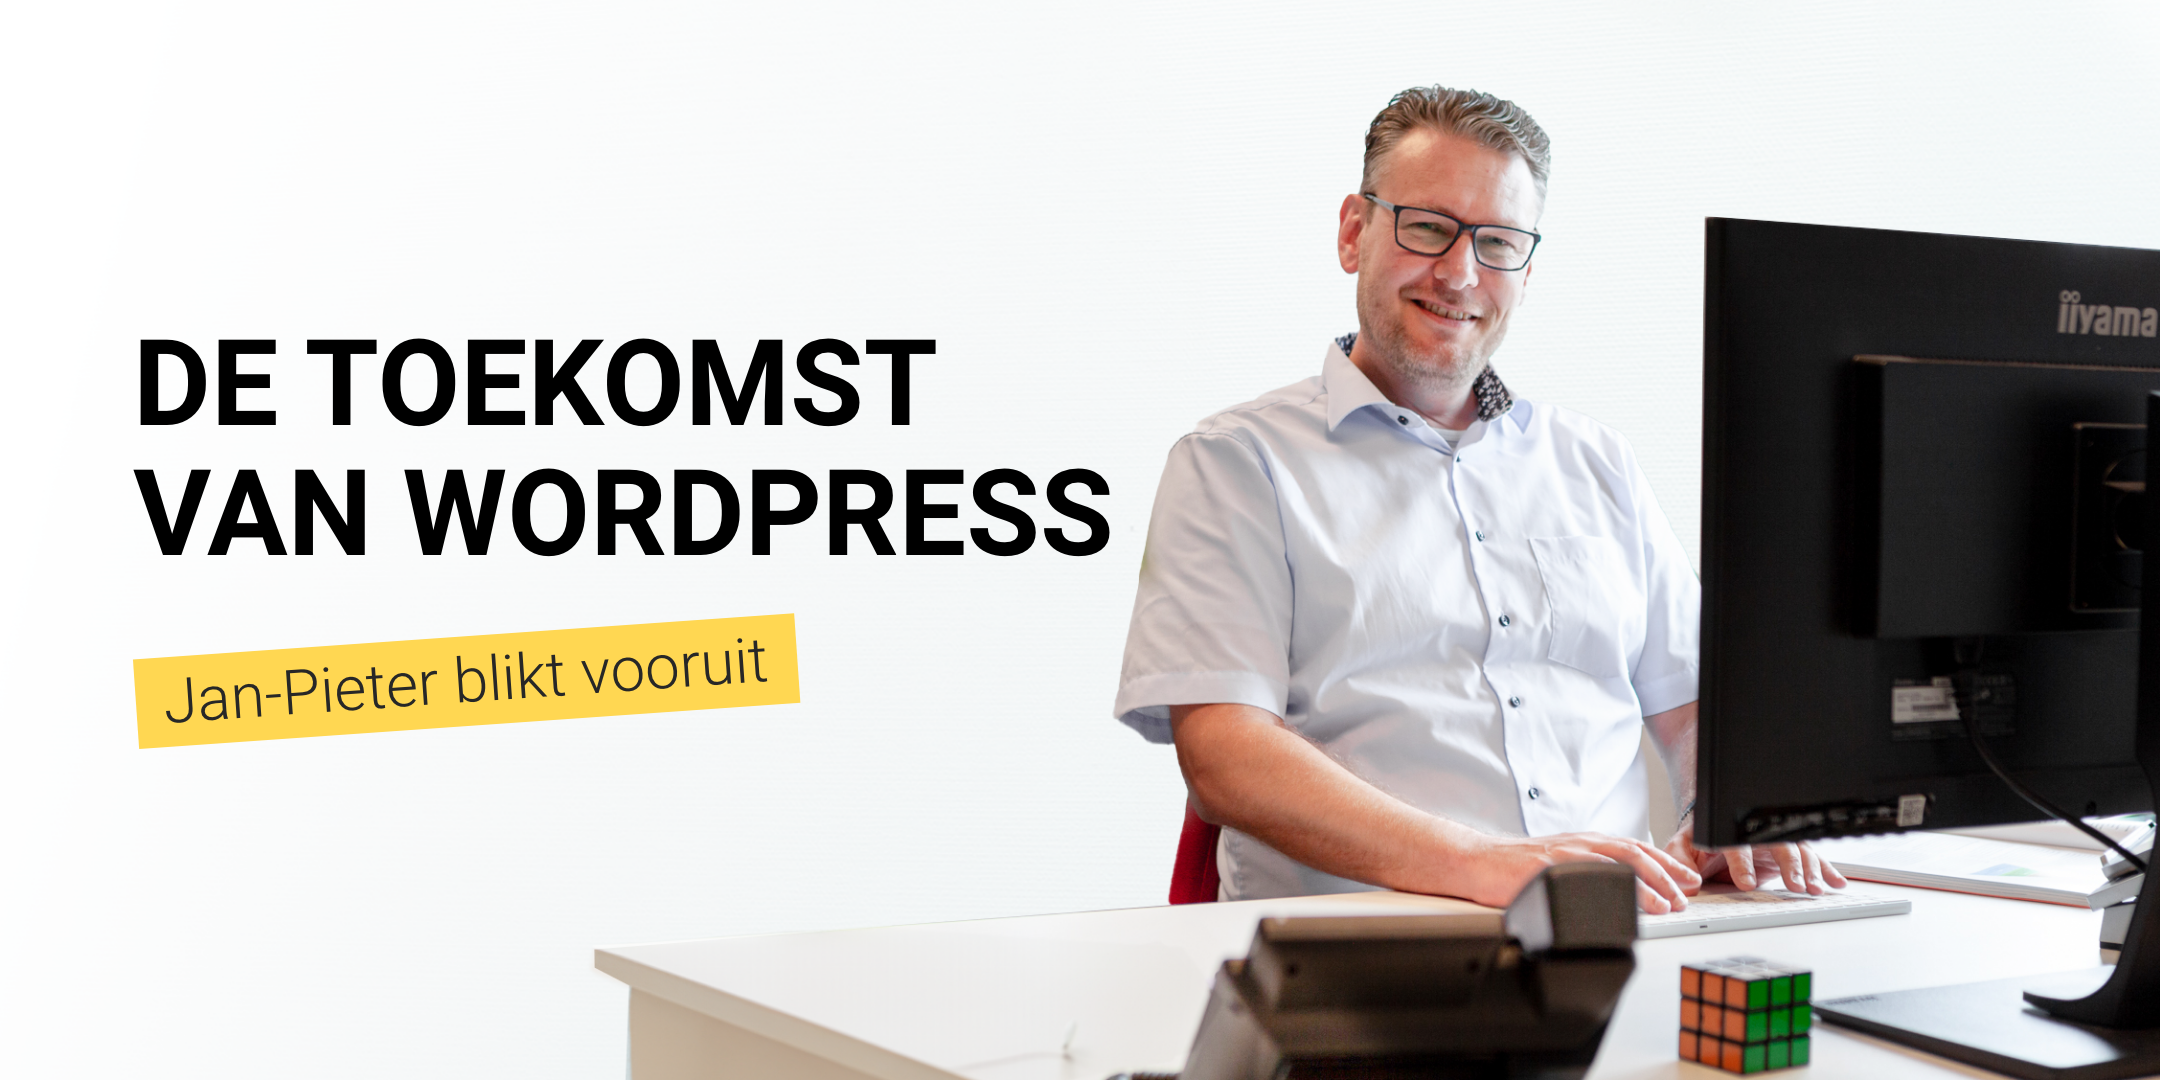 Jan Pieter Vos blikt vooruit op de toekomst van wordpress